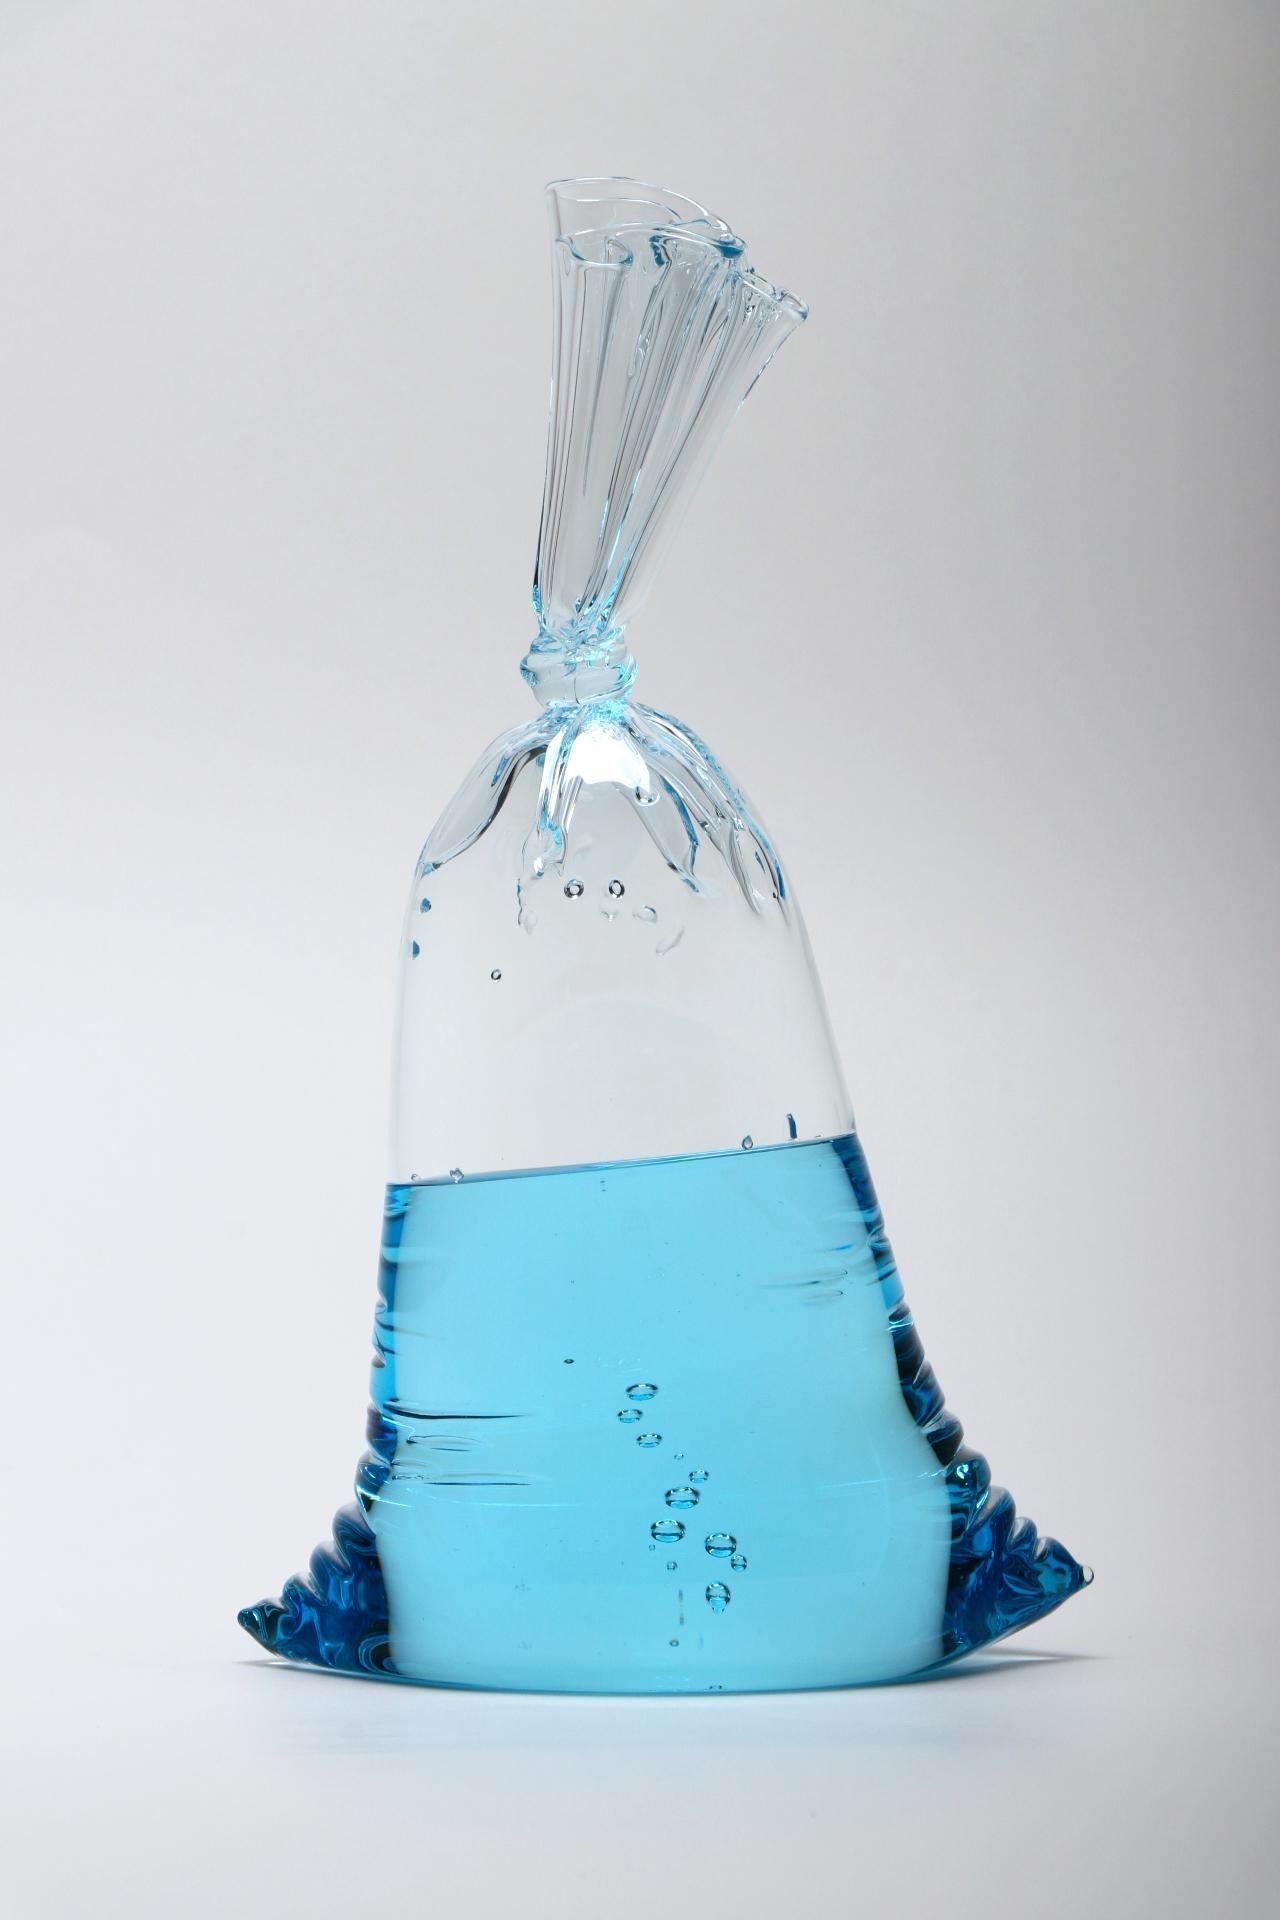 NEUE VERÖFFENTLICHUNG! Blue Series - Hyperreale kleine blaue Wassersack-Glasskulptur, Voll- und Hohlglas von Dylan Martinez. 

Größe: 11,75 x 7 x 4,5 Zoll

Die hyperrealen Skulpturen von Dylan Martinez bestehen aus heißgeformtem Glas, das der